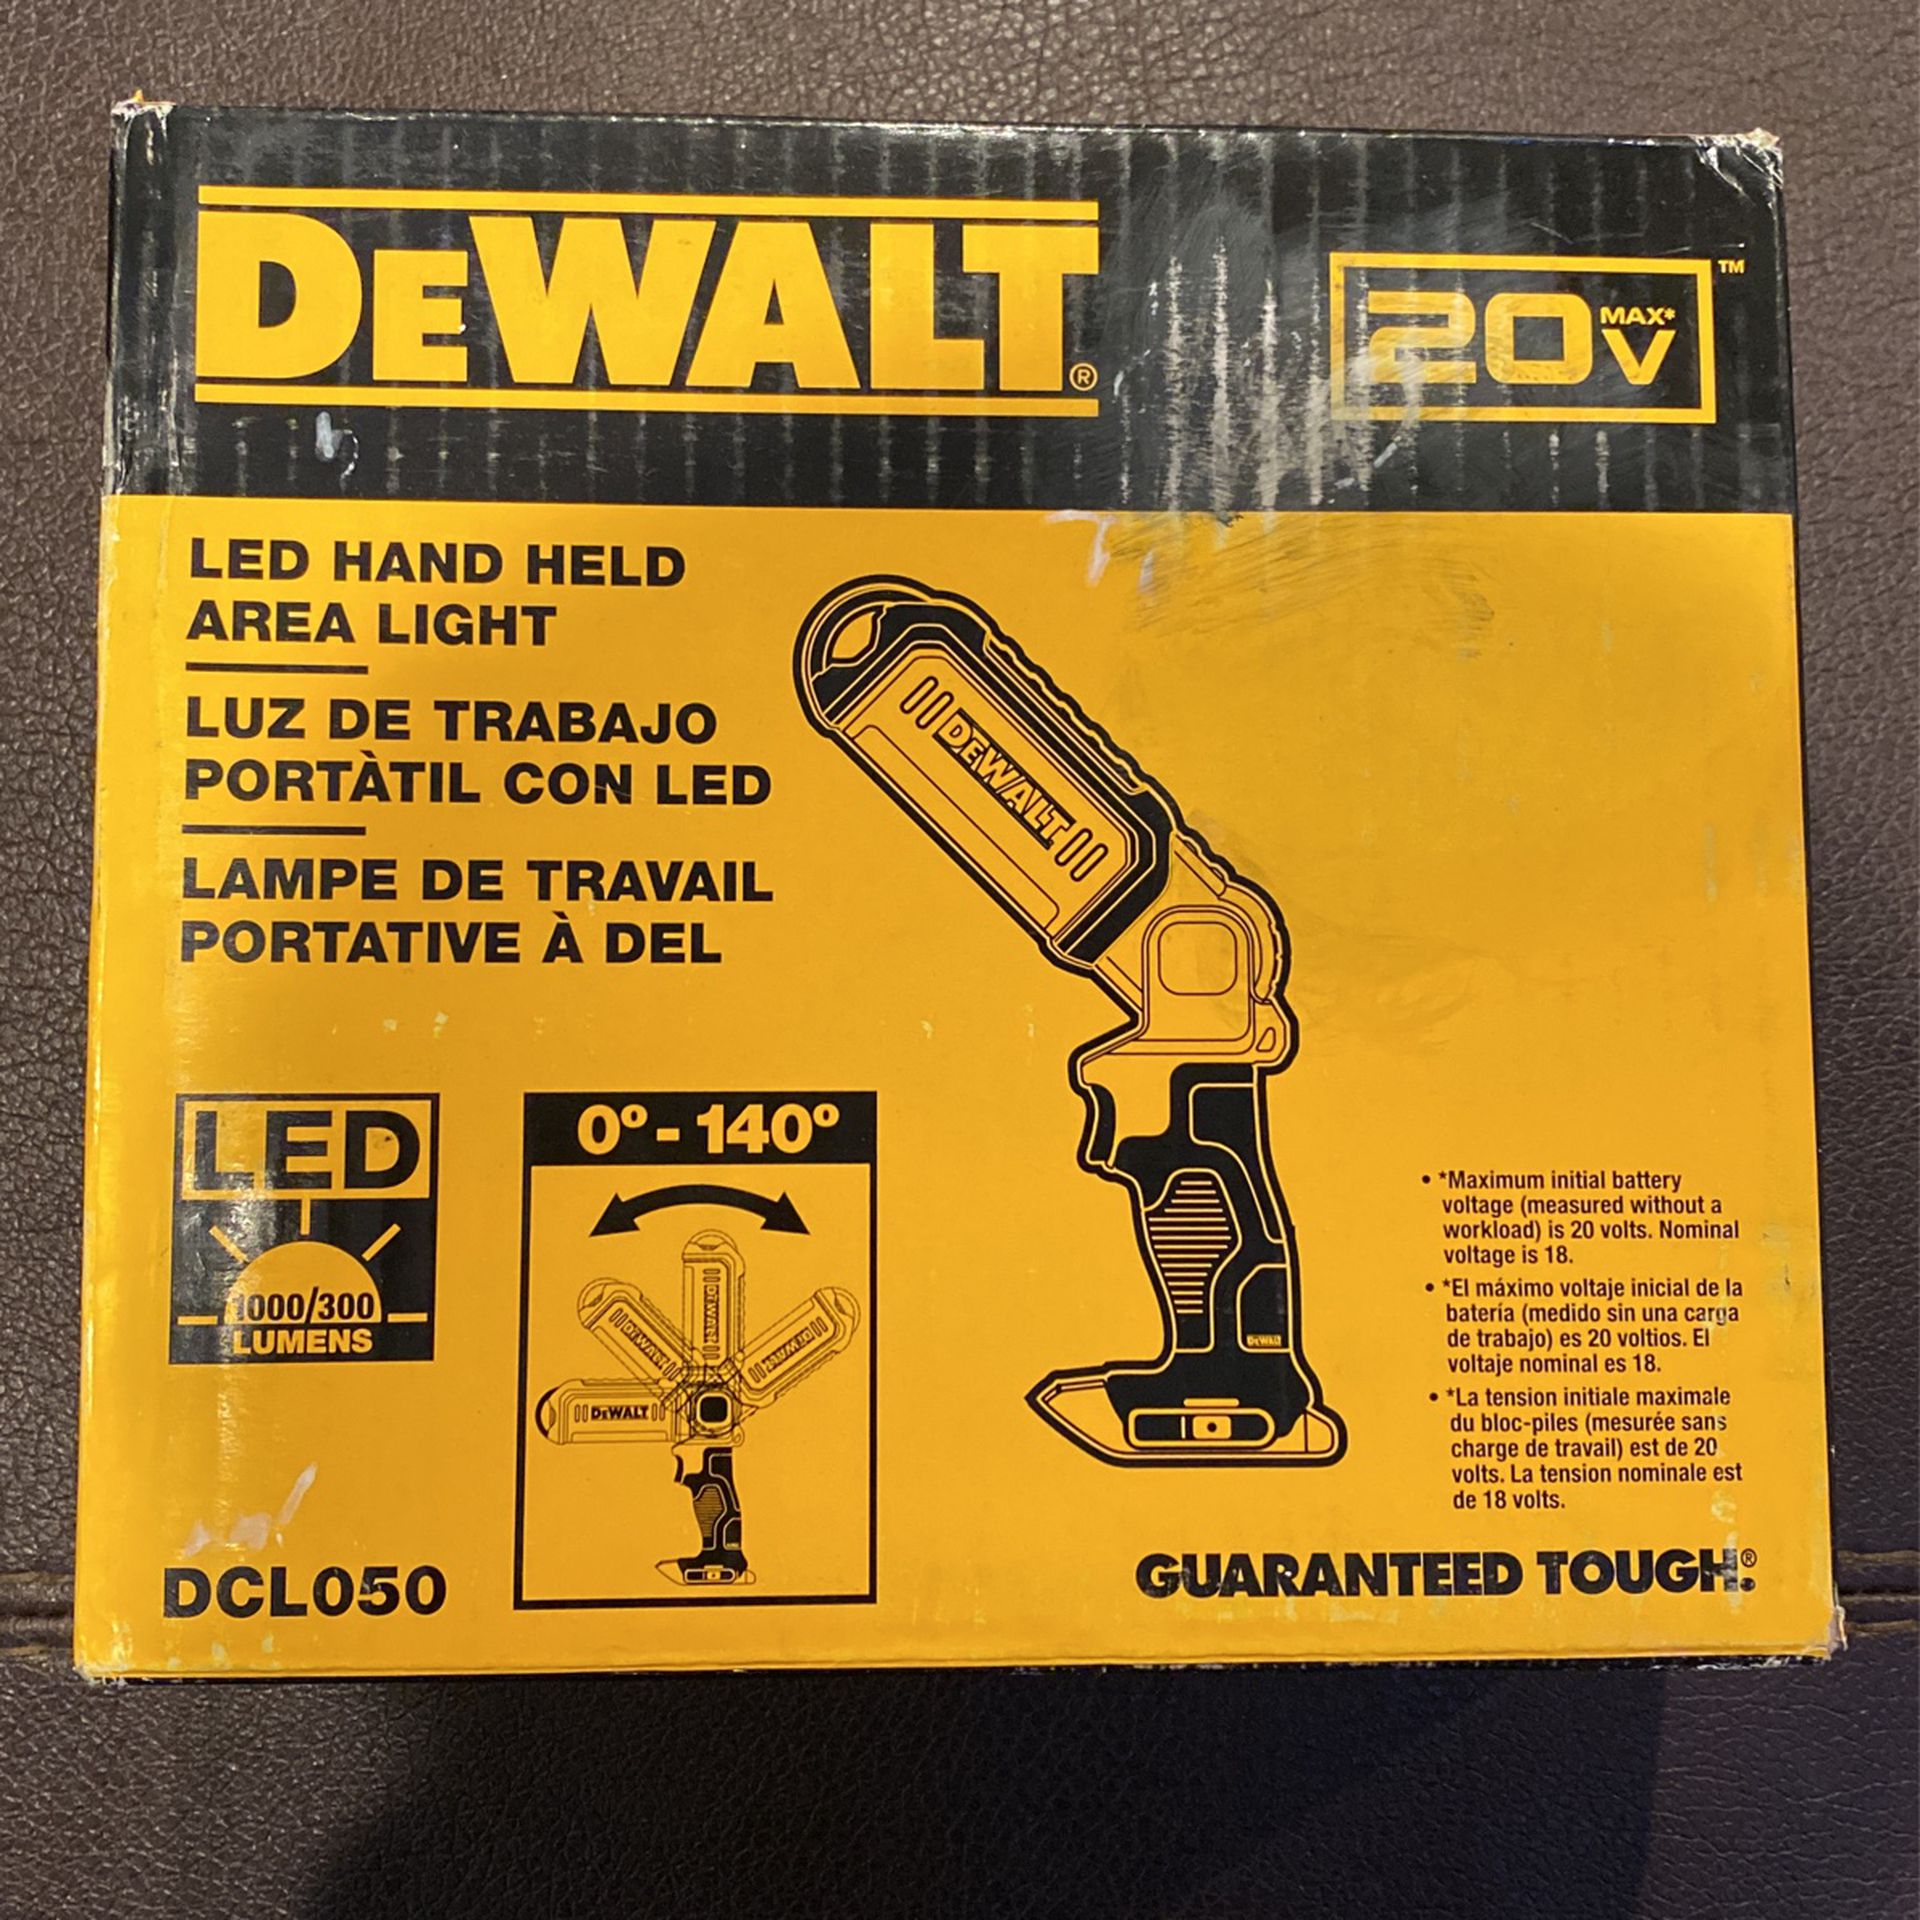 Dewalt DCL050 LED Hand Held Area Light 1000/300 Lumens 0-140 Degrees 20V